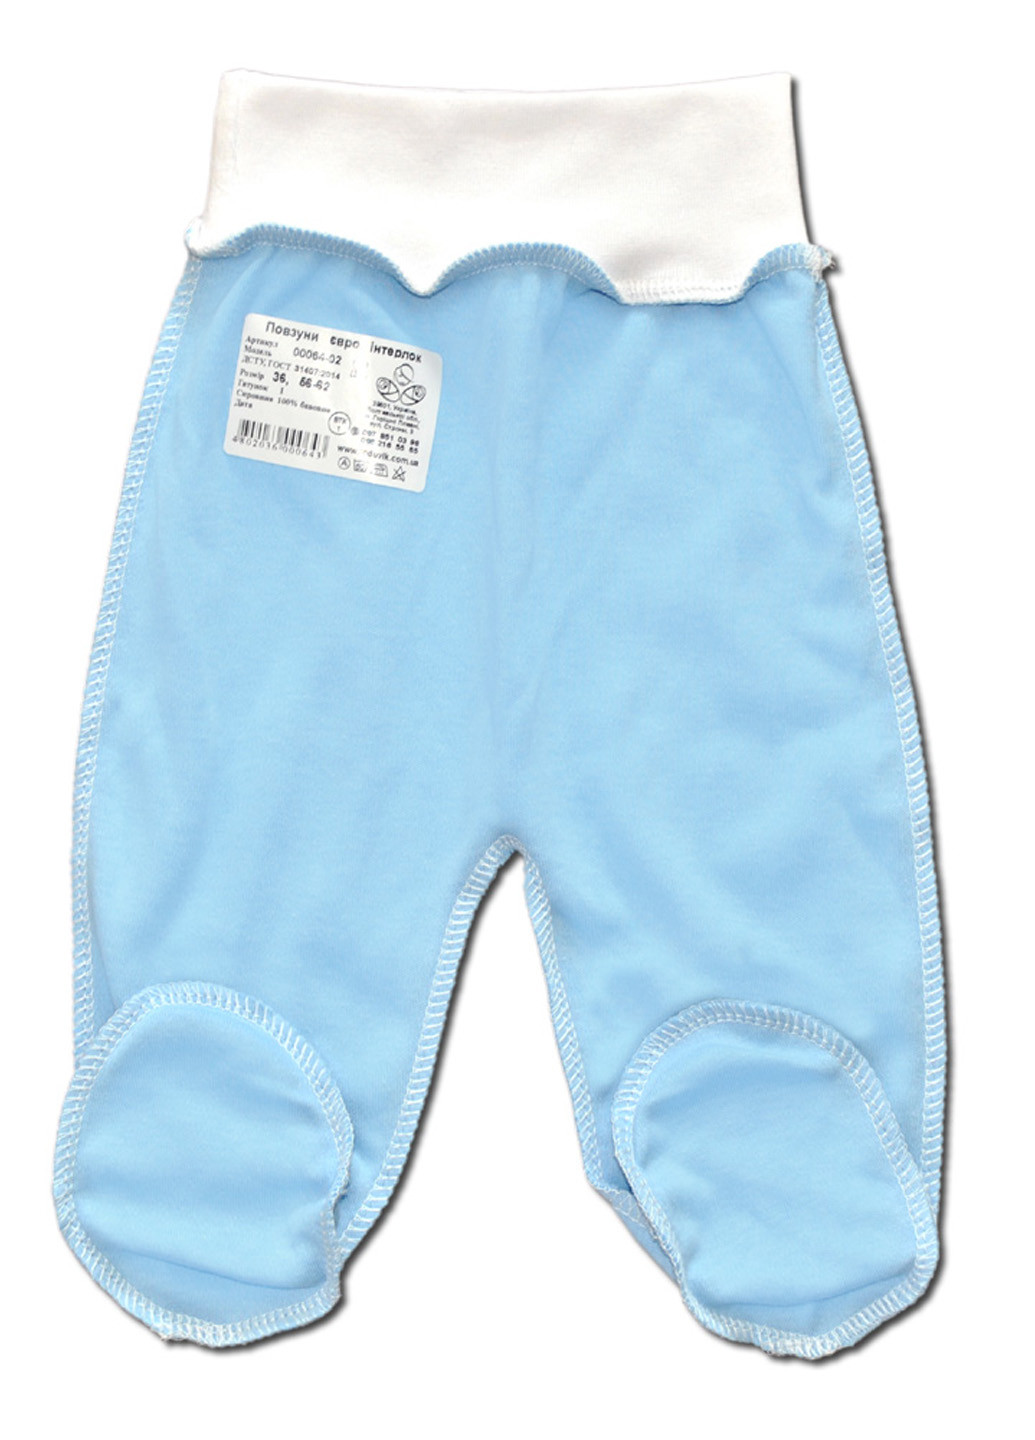 Голубой демисезонный комплект одежды для малыша №6 (4 предмета) тм коллекция капитошка белый Родовик комплект - 05БХ